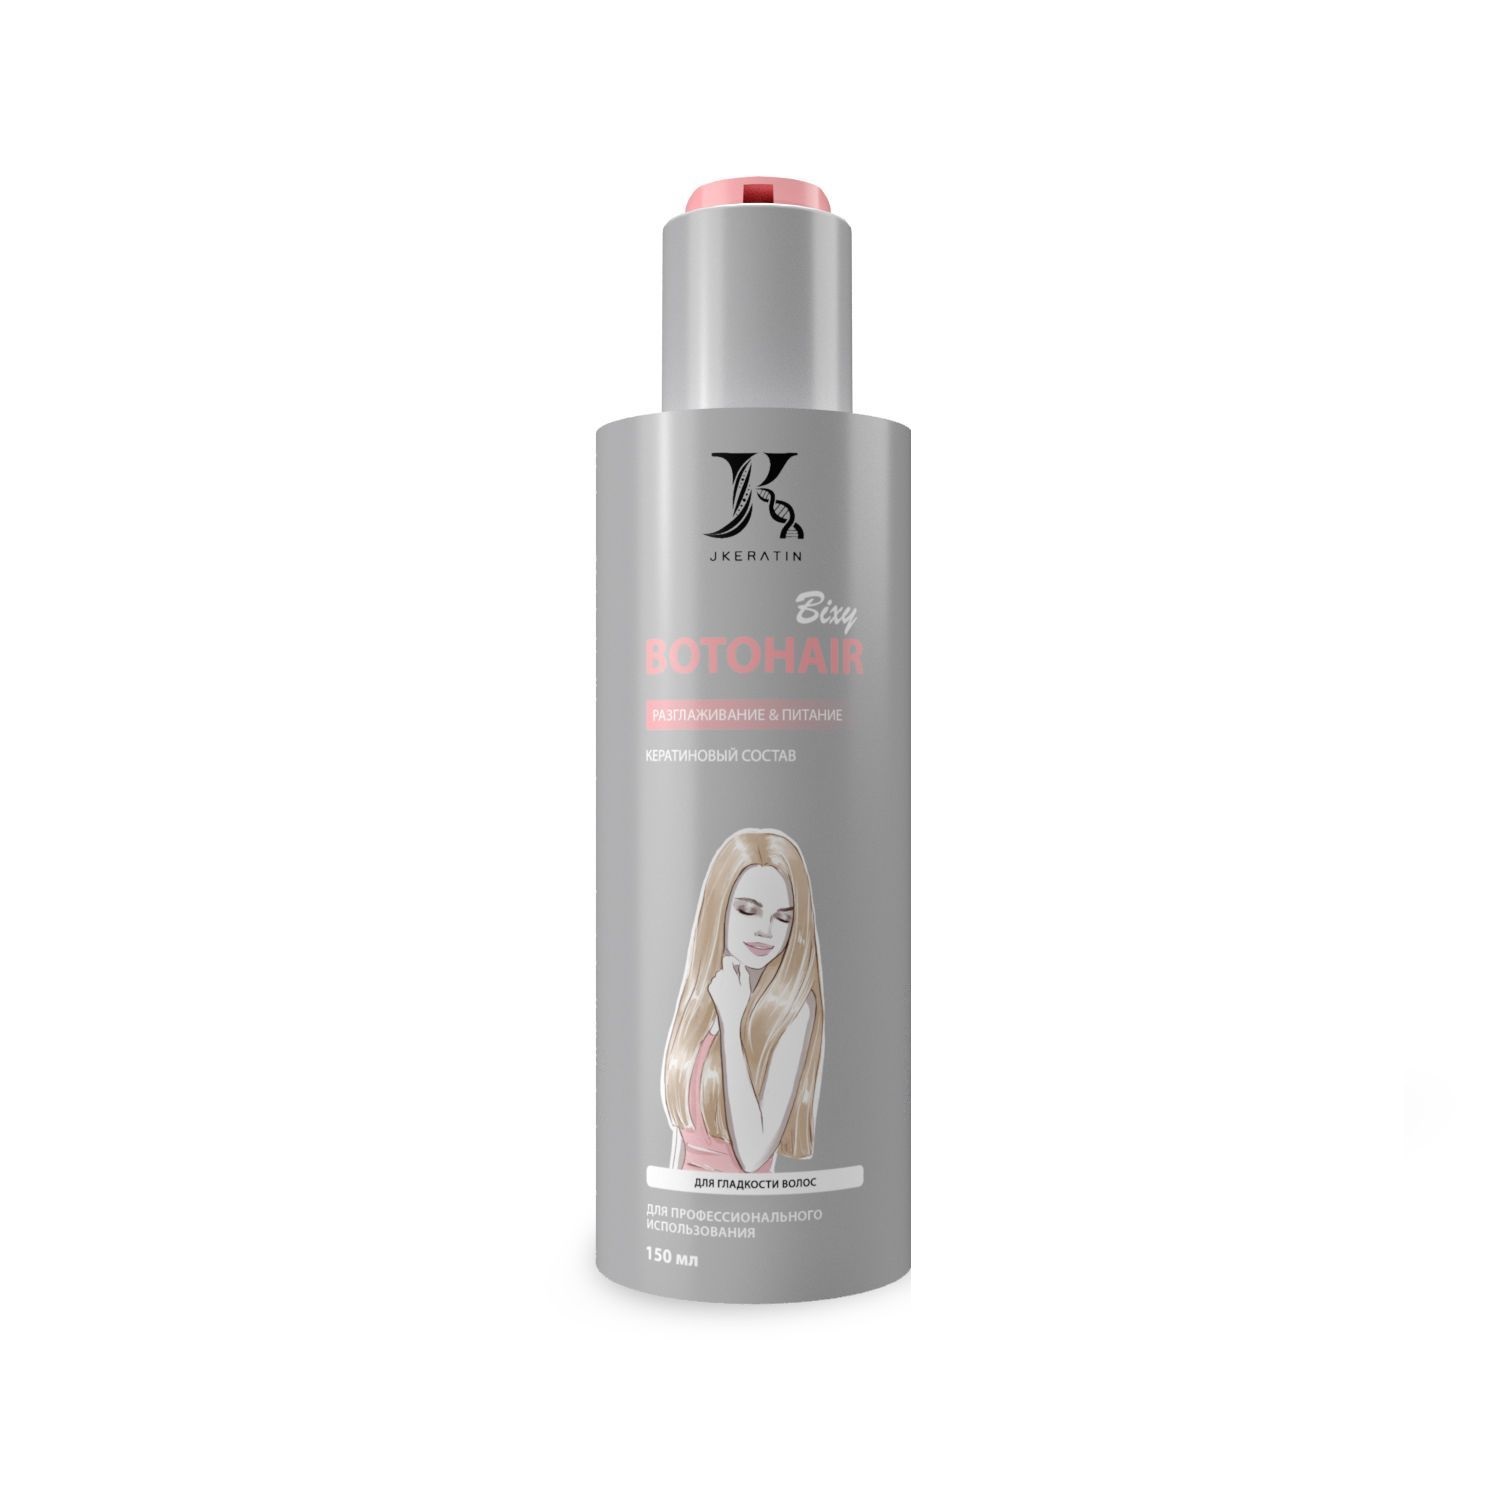 JKERATIN, Кератин для разглаживания волос с сохранением объема Botohair Bixy, 150 мл.